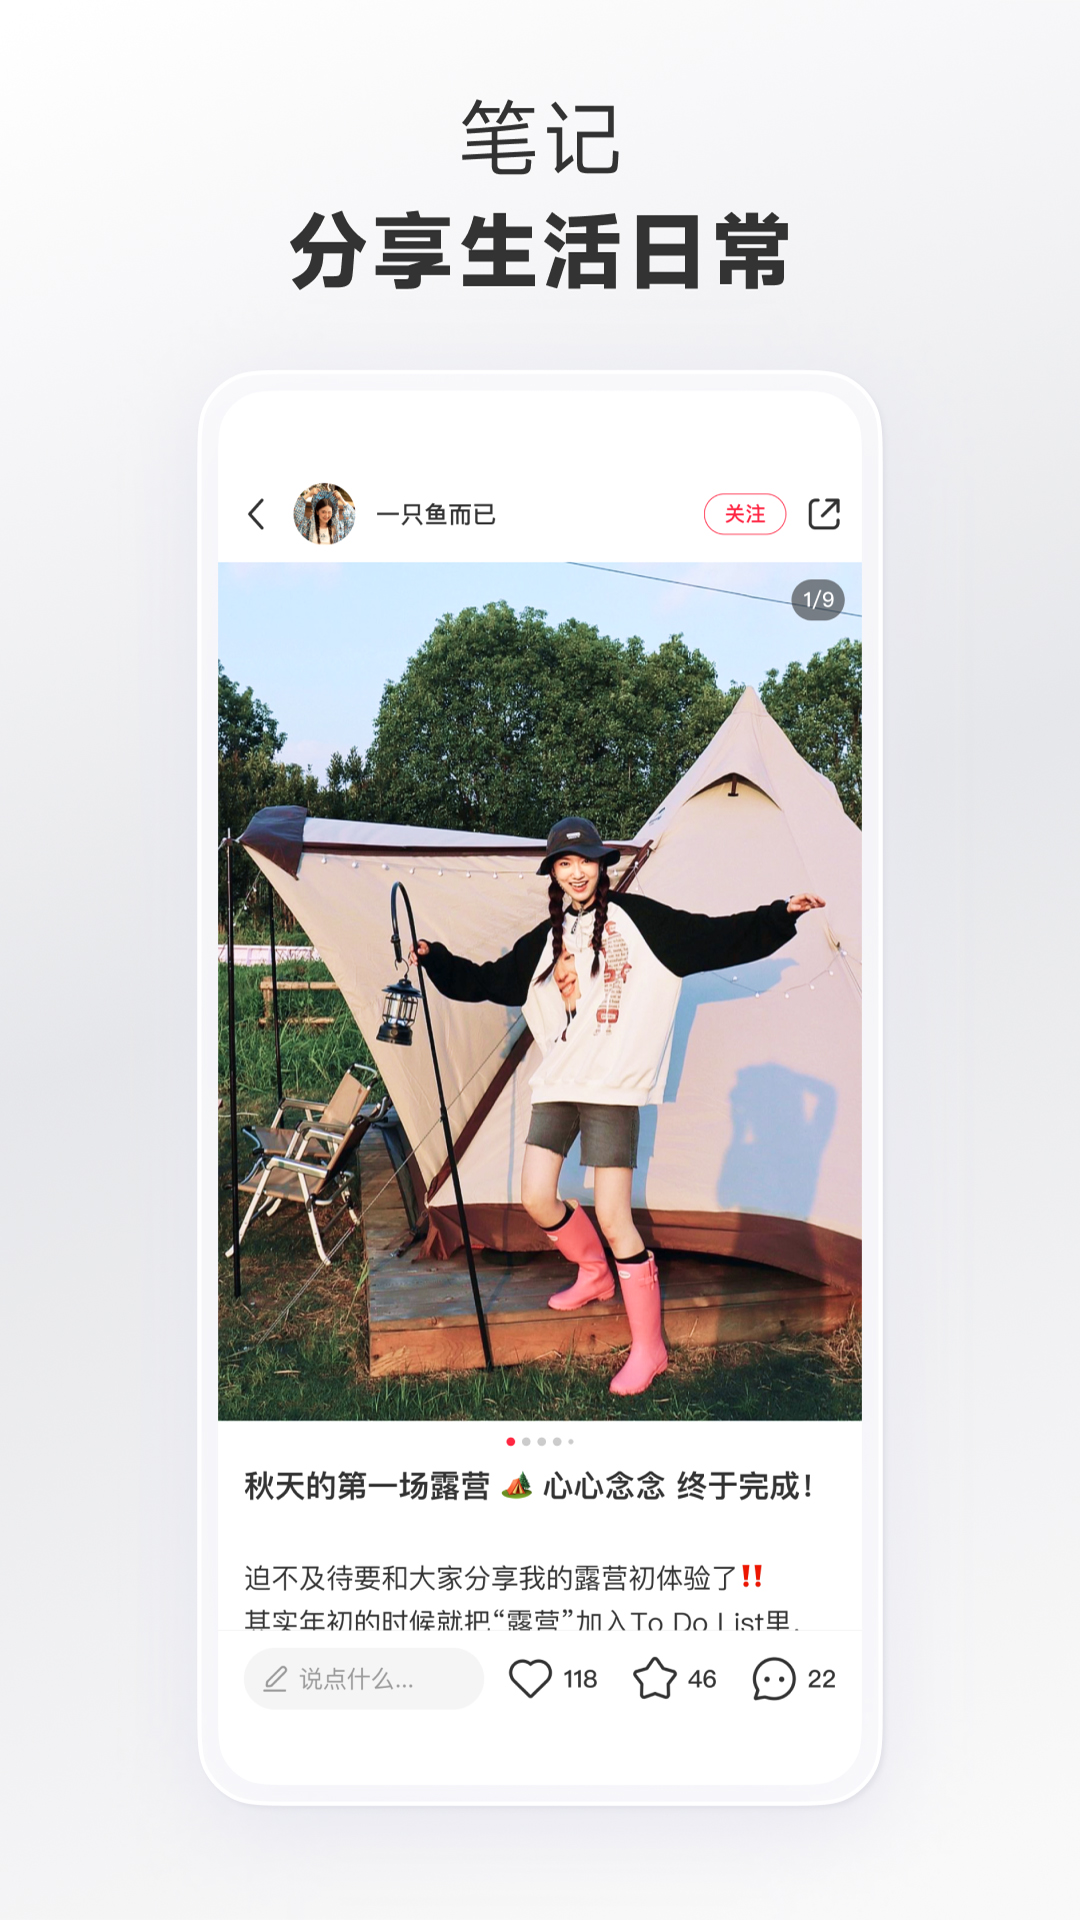 小红书最新版本app